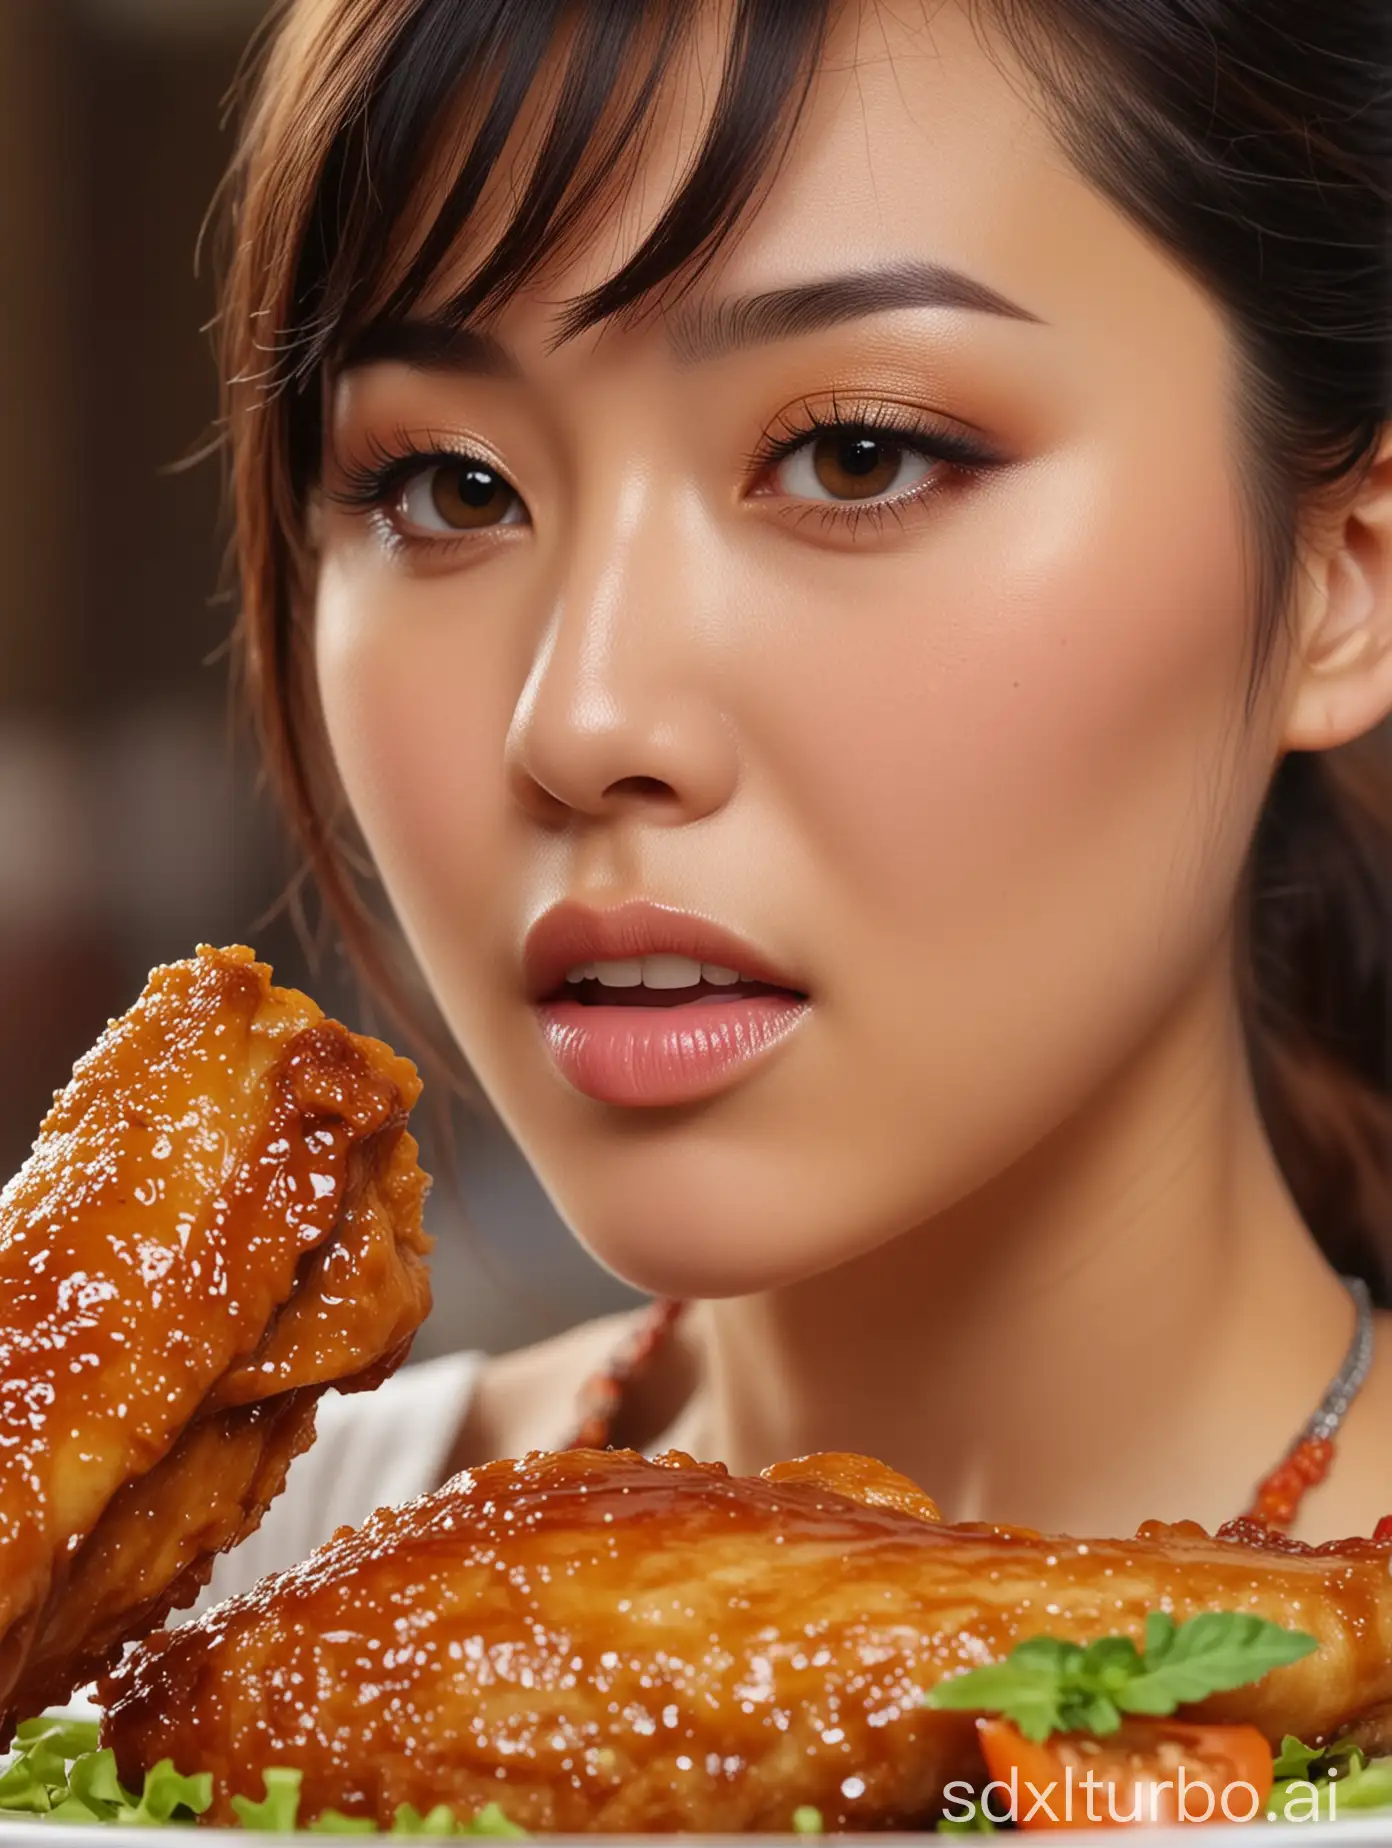 中国现代、潮流美女吃一个奥尔良味道的大鸡翅中的近景，高清，背景虚化，HD 4K --ar 9:16 --iw 1.8